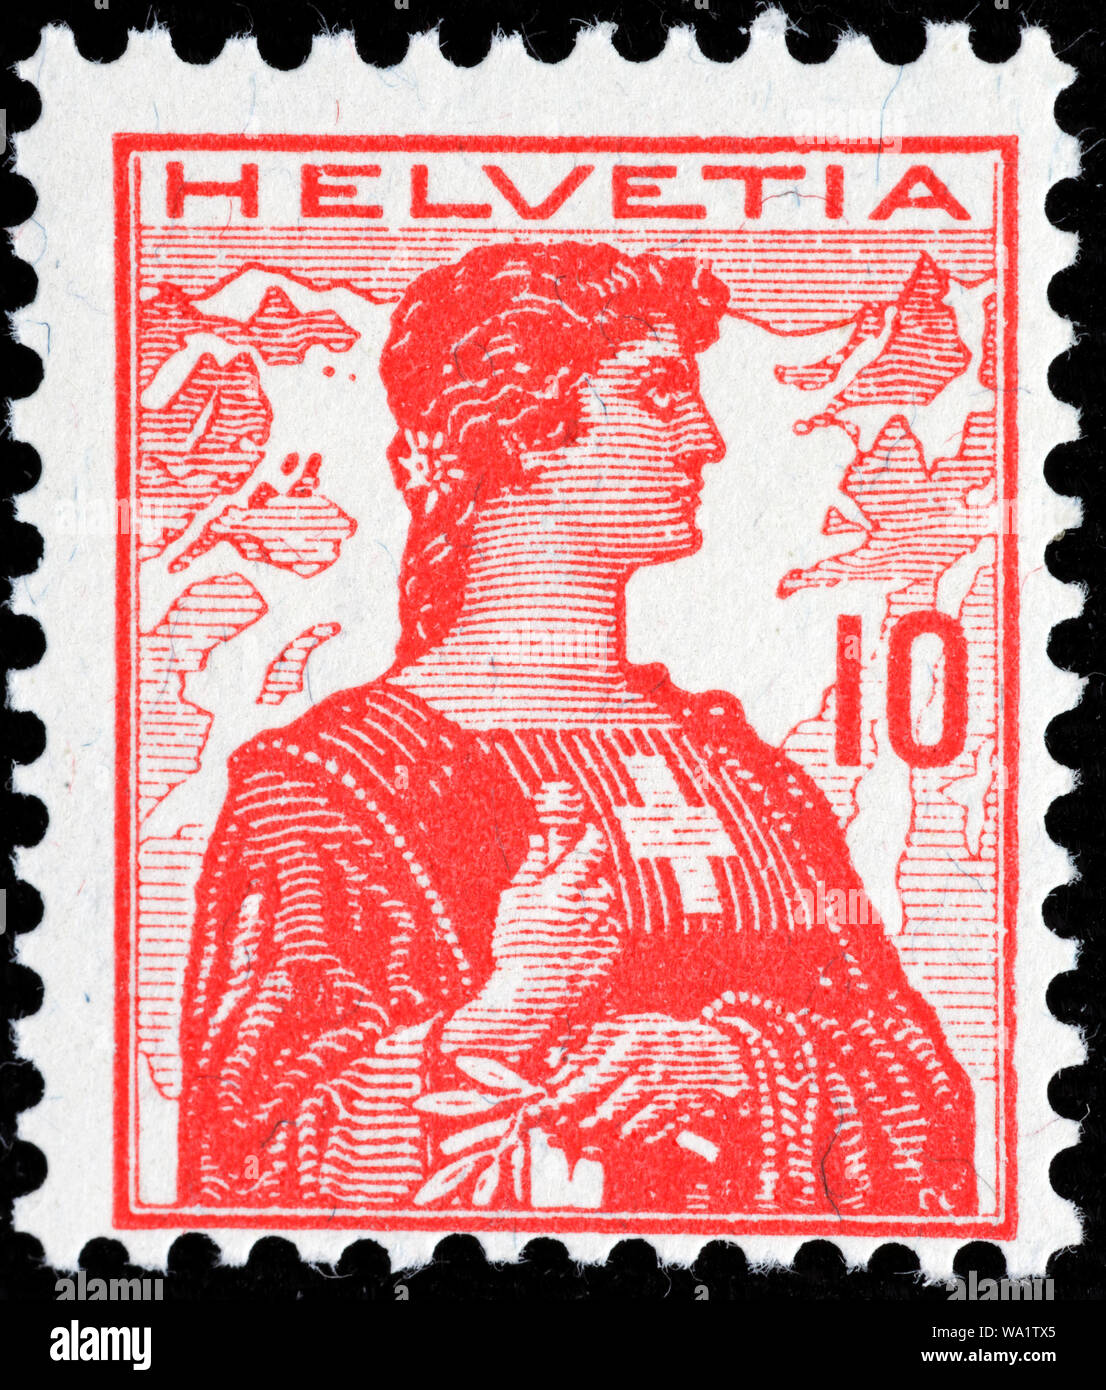 Helvetia, postage stamp, Switzerland, 1909 Stock Photo